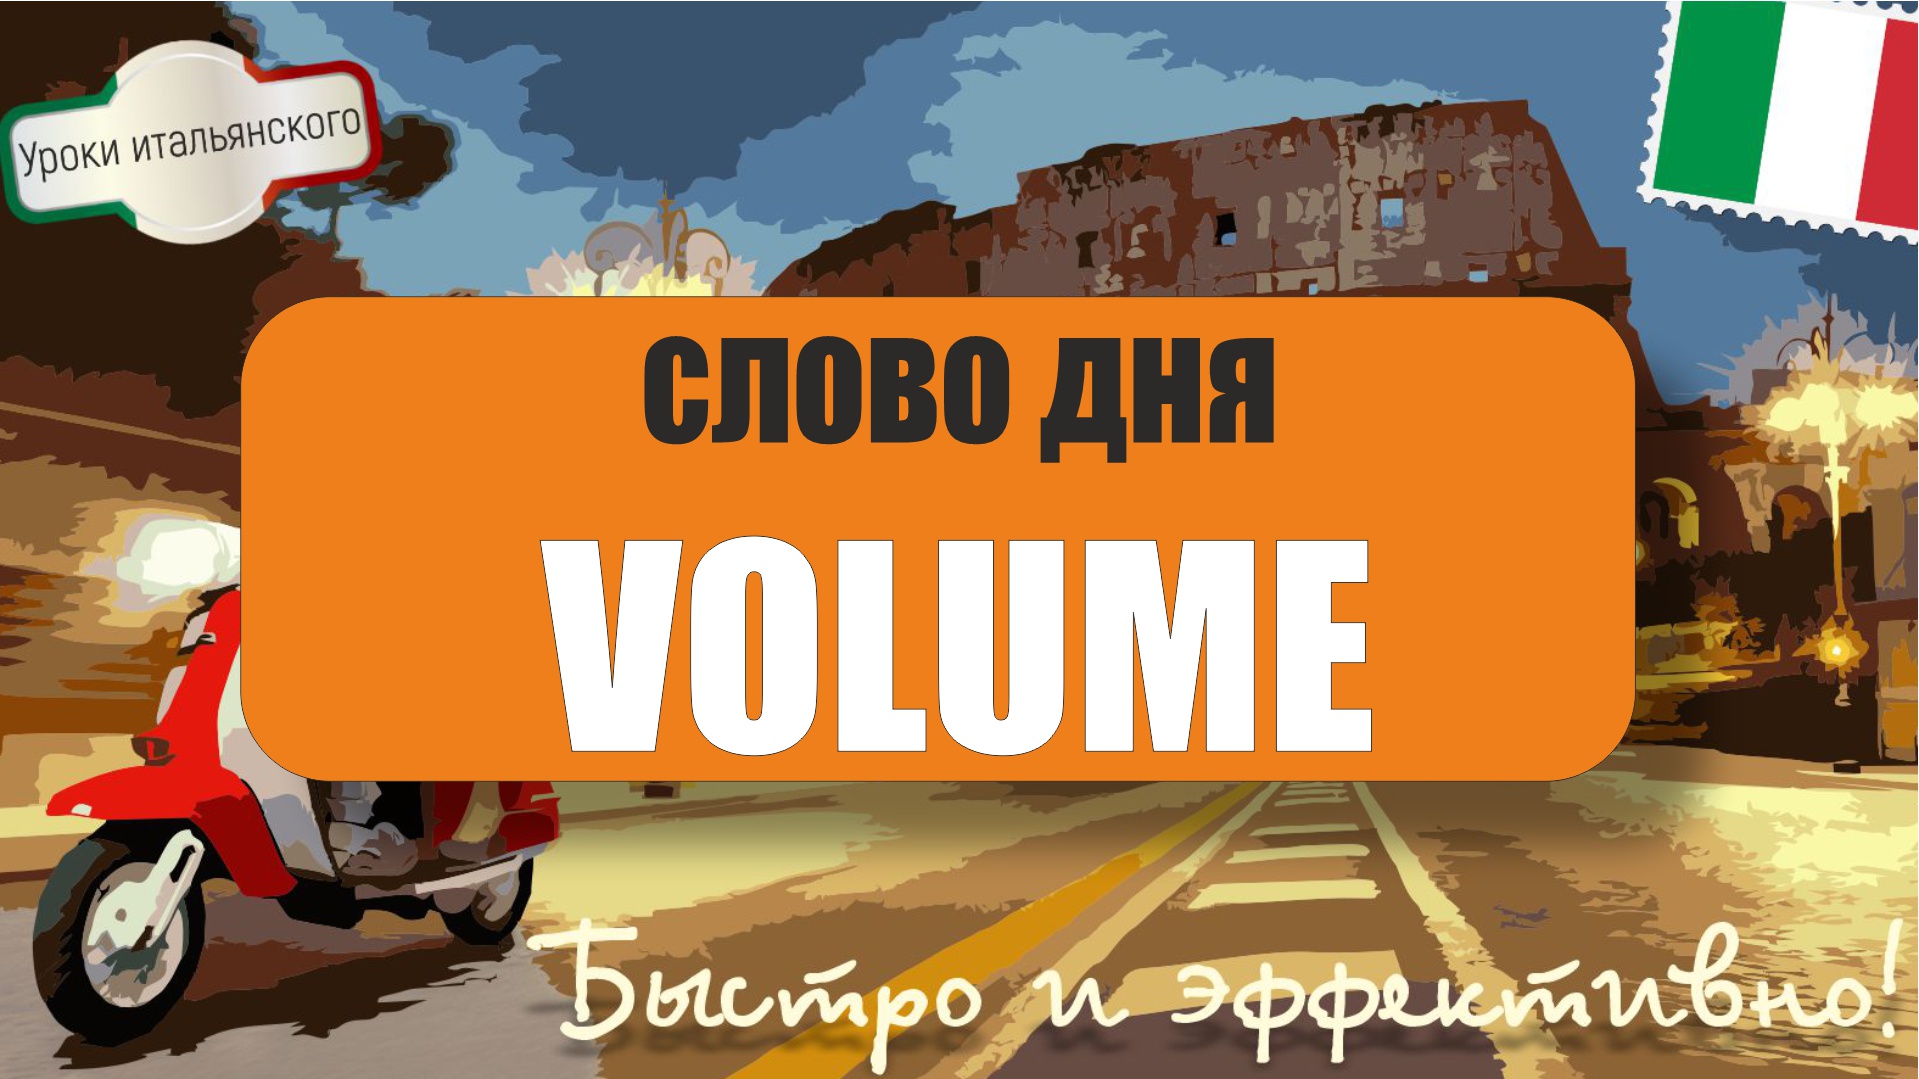 Слово дня: VOLUME - Учим итальянский вместе с Мартино! #volume #объем #громкость #том